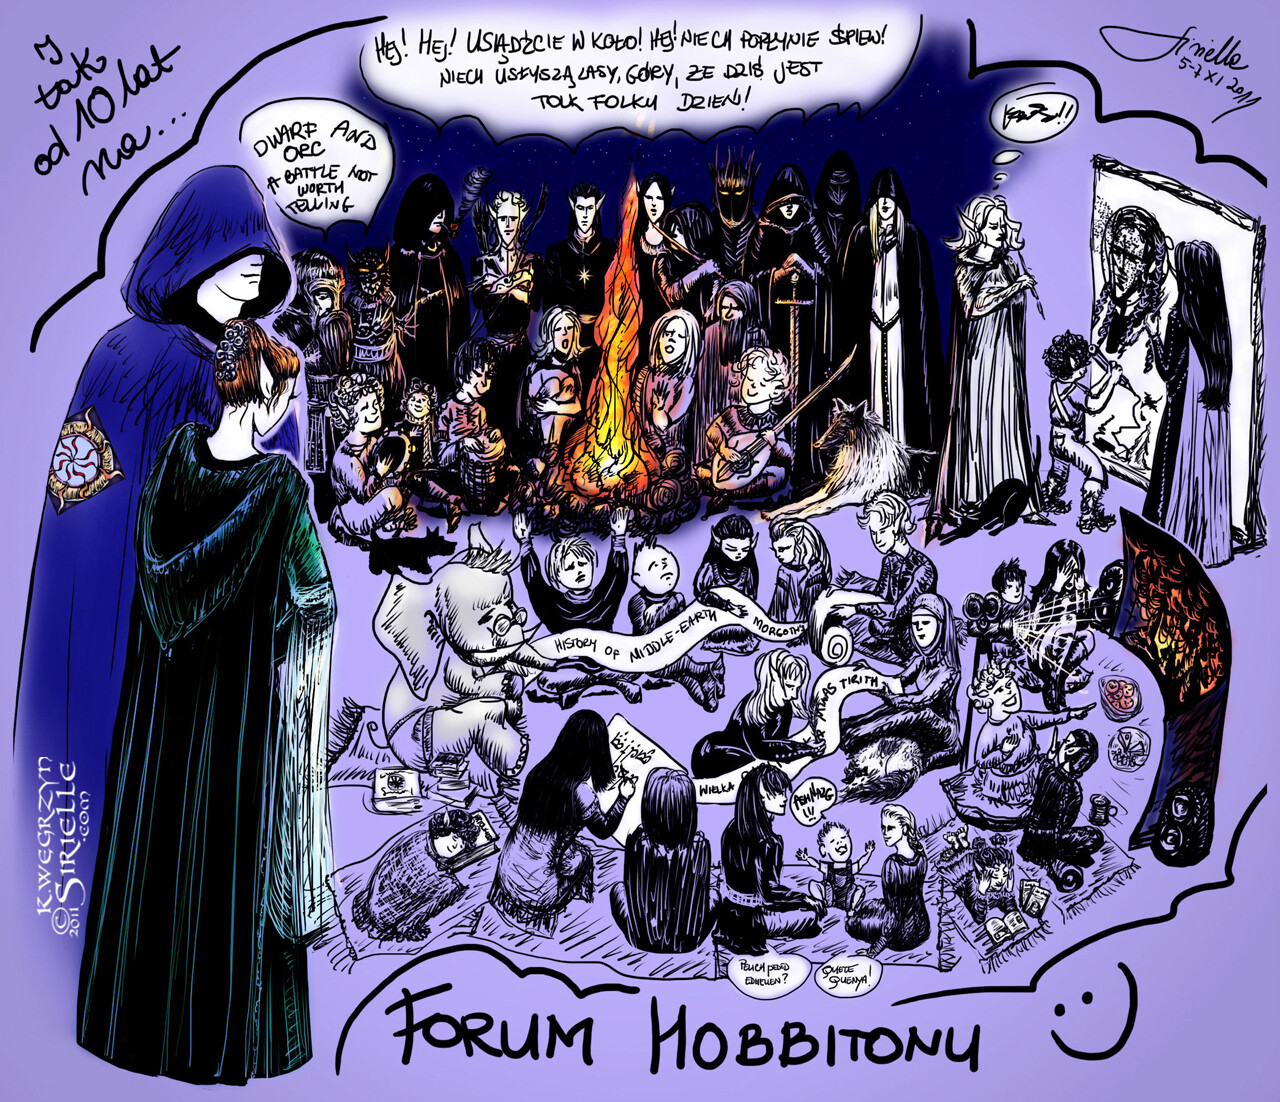 10th Anniversary of Hobbiton Forum (2011)